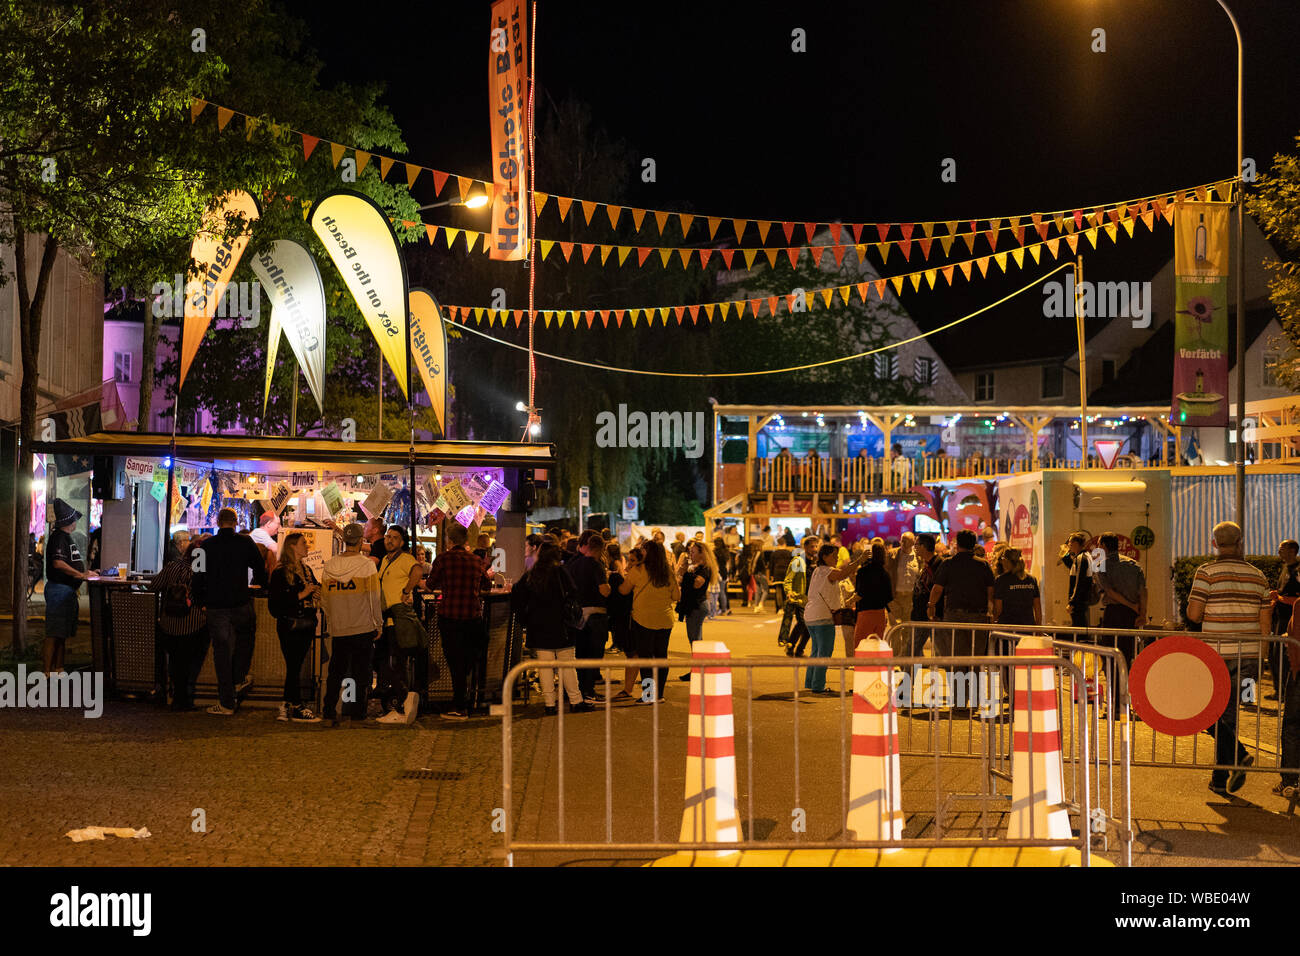 Stadtfest Brugg 24. august 2019. street photography. Hot-Shots-Bar in beleuchtete Stadt Teil mit bunten Wimpel, viele Menschen und Sicherheit Poller Stockfoto